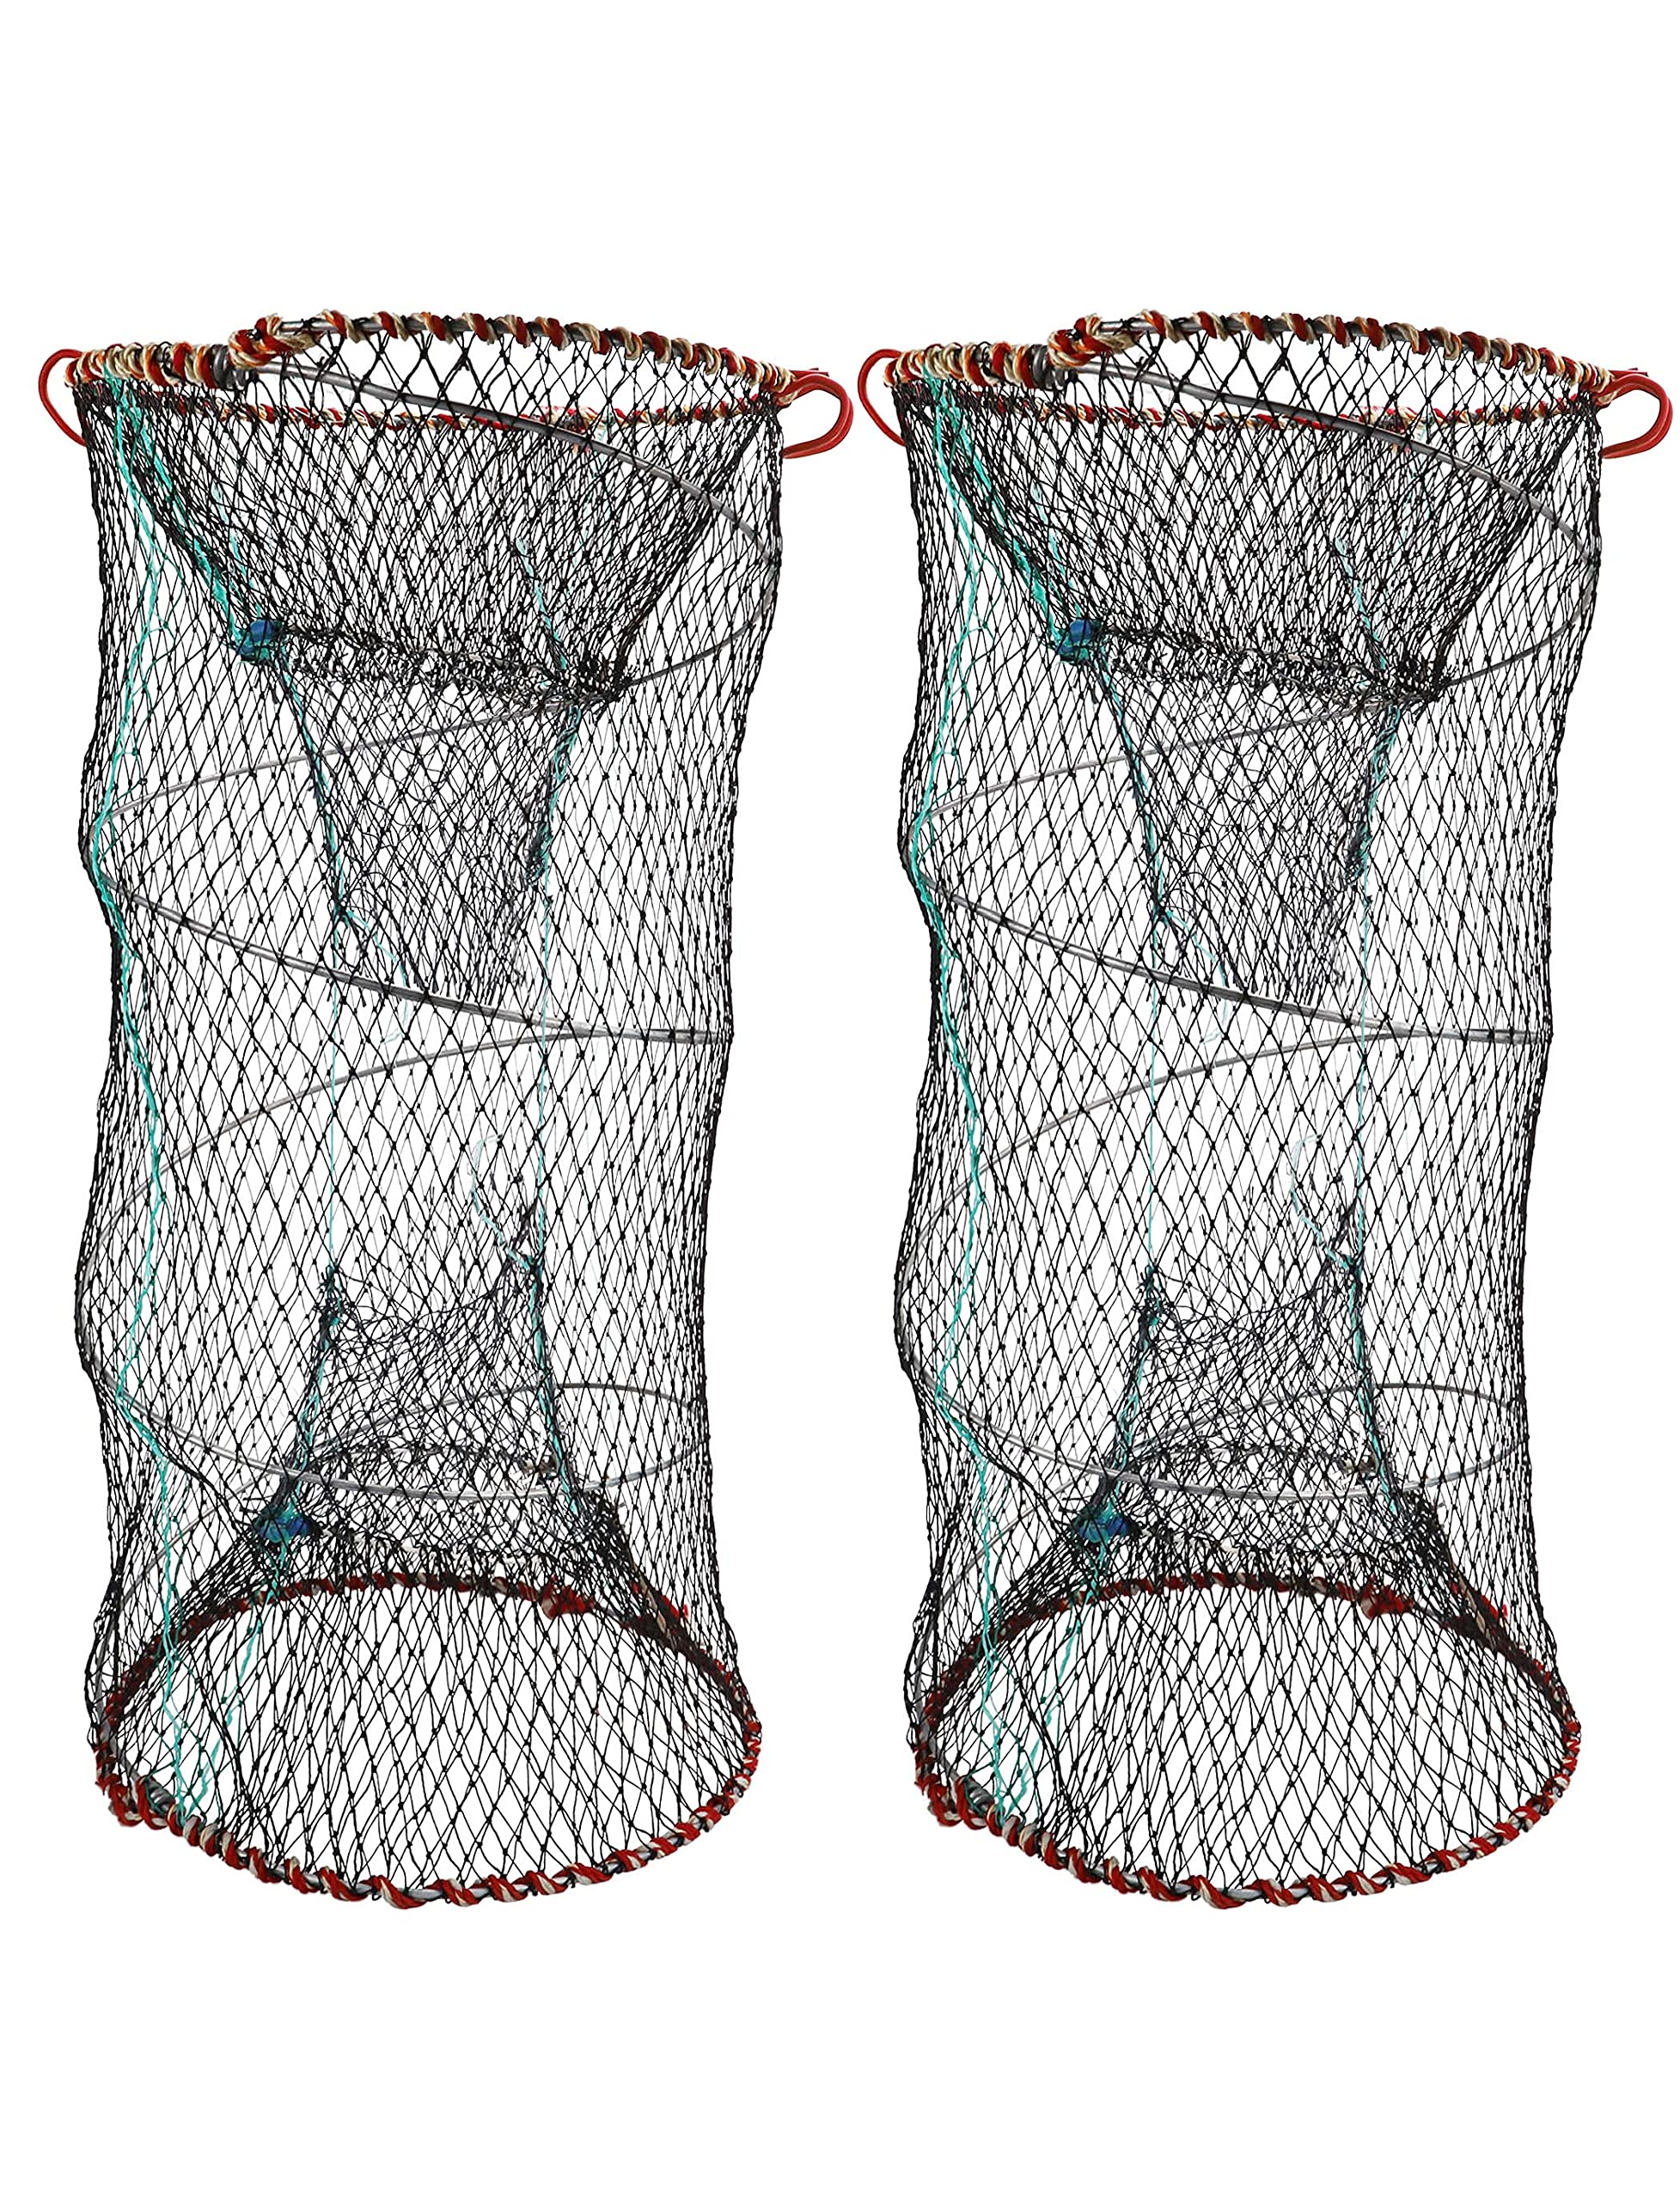 24x24 Folded Fishing Net Small Fish Crawdad Minnow Bait Cast Mesh Dip Trap